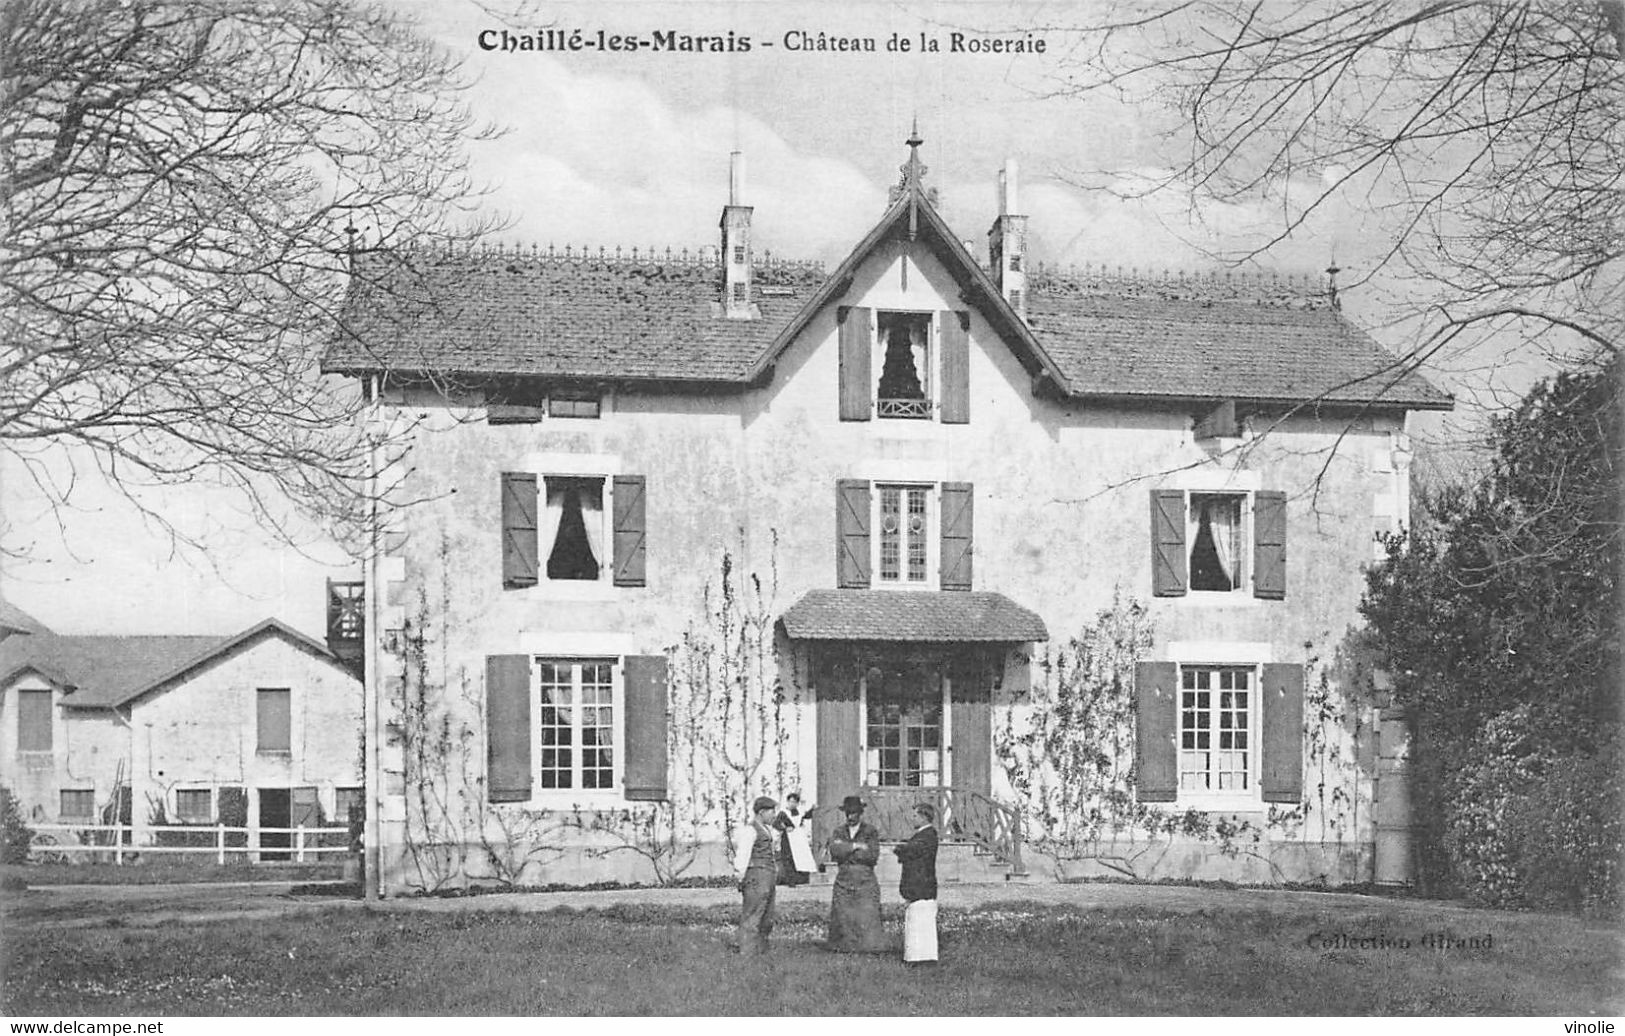 22-5968 : CHAILLE-LES-MARAIS. CHATEAU DE LA ROSERAIE - Chaille Les Marais